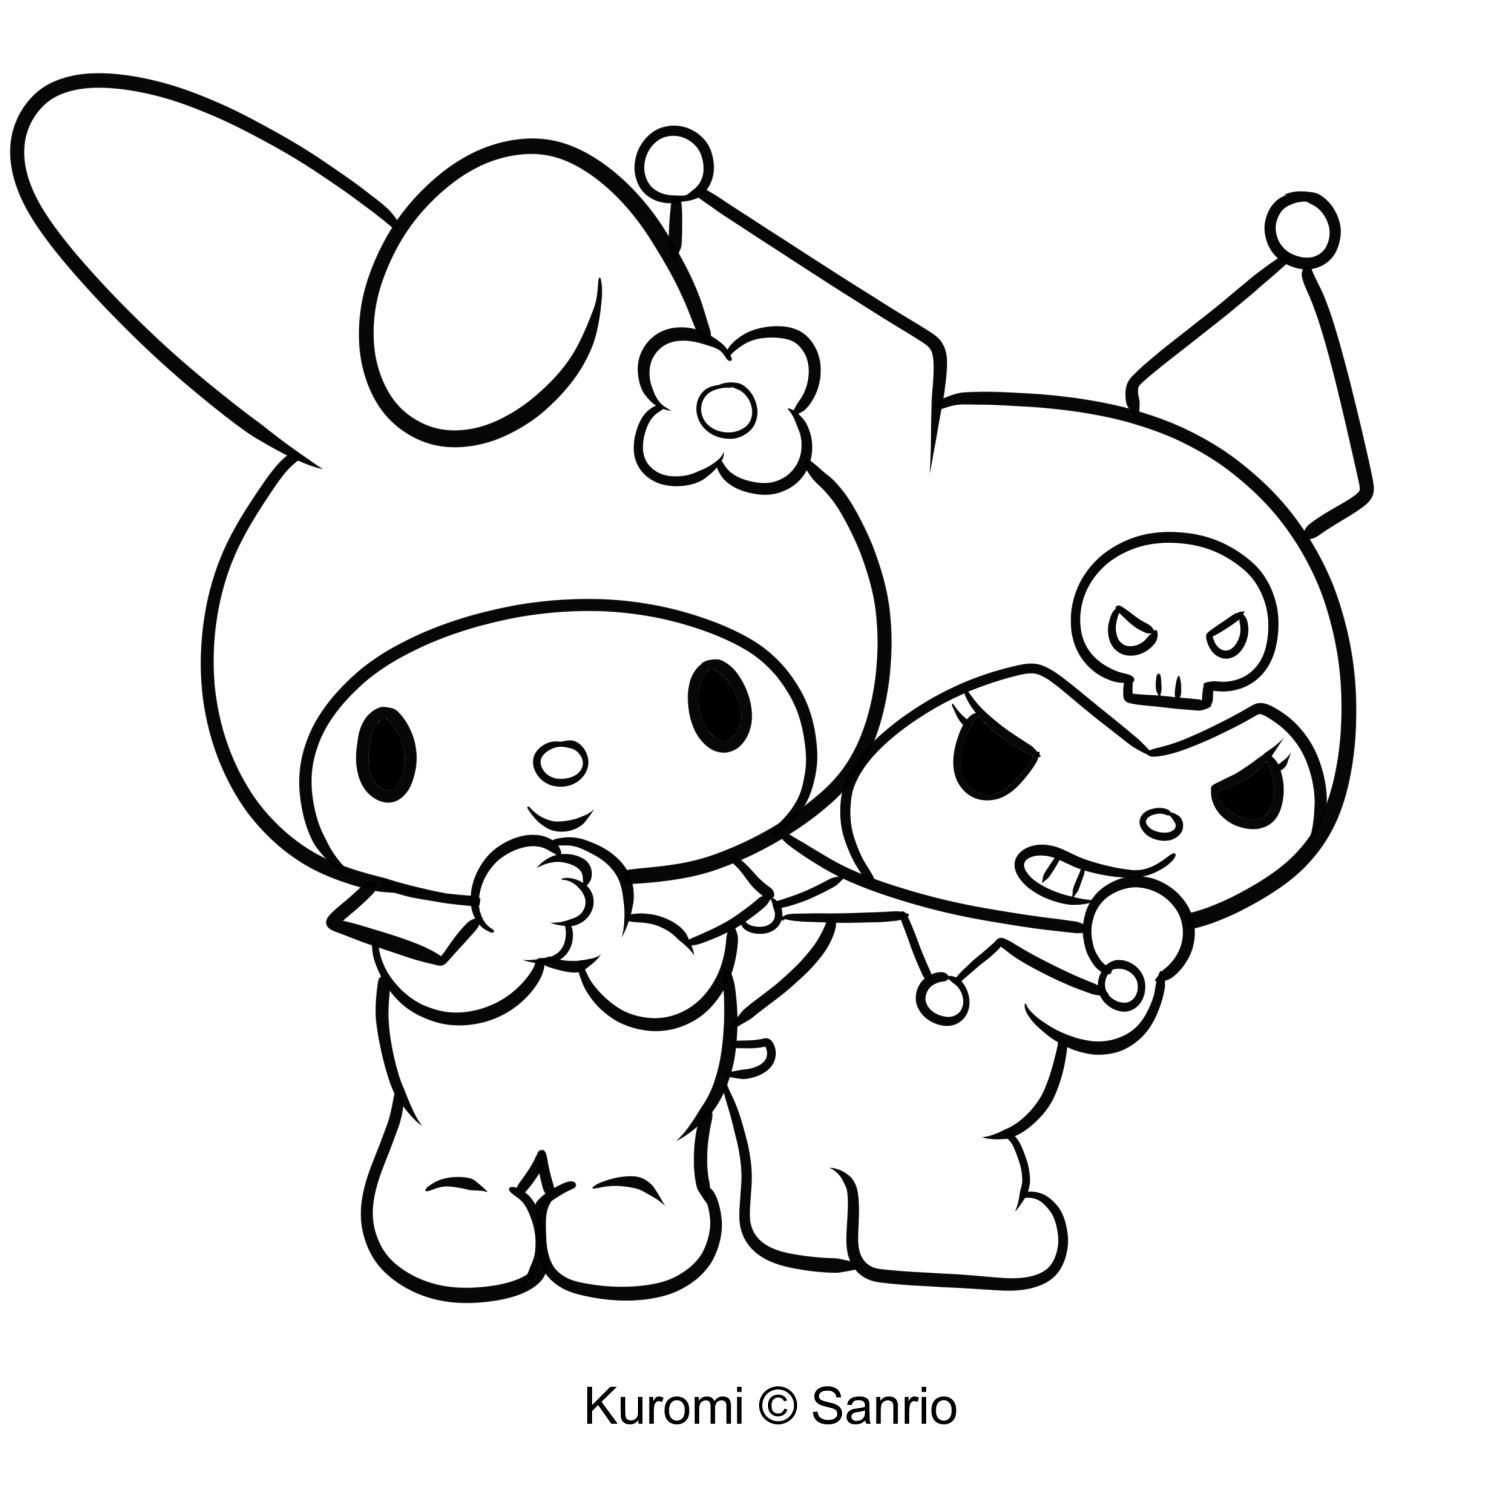 Disegno di Kuromi 22 di My Melody da stampare e colorare